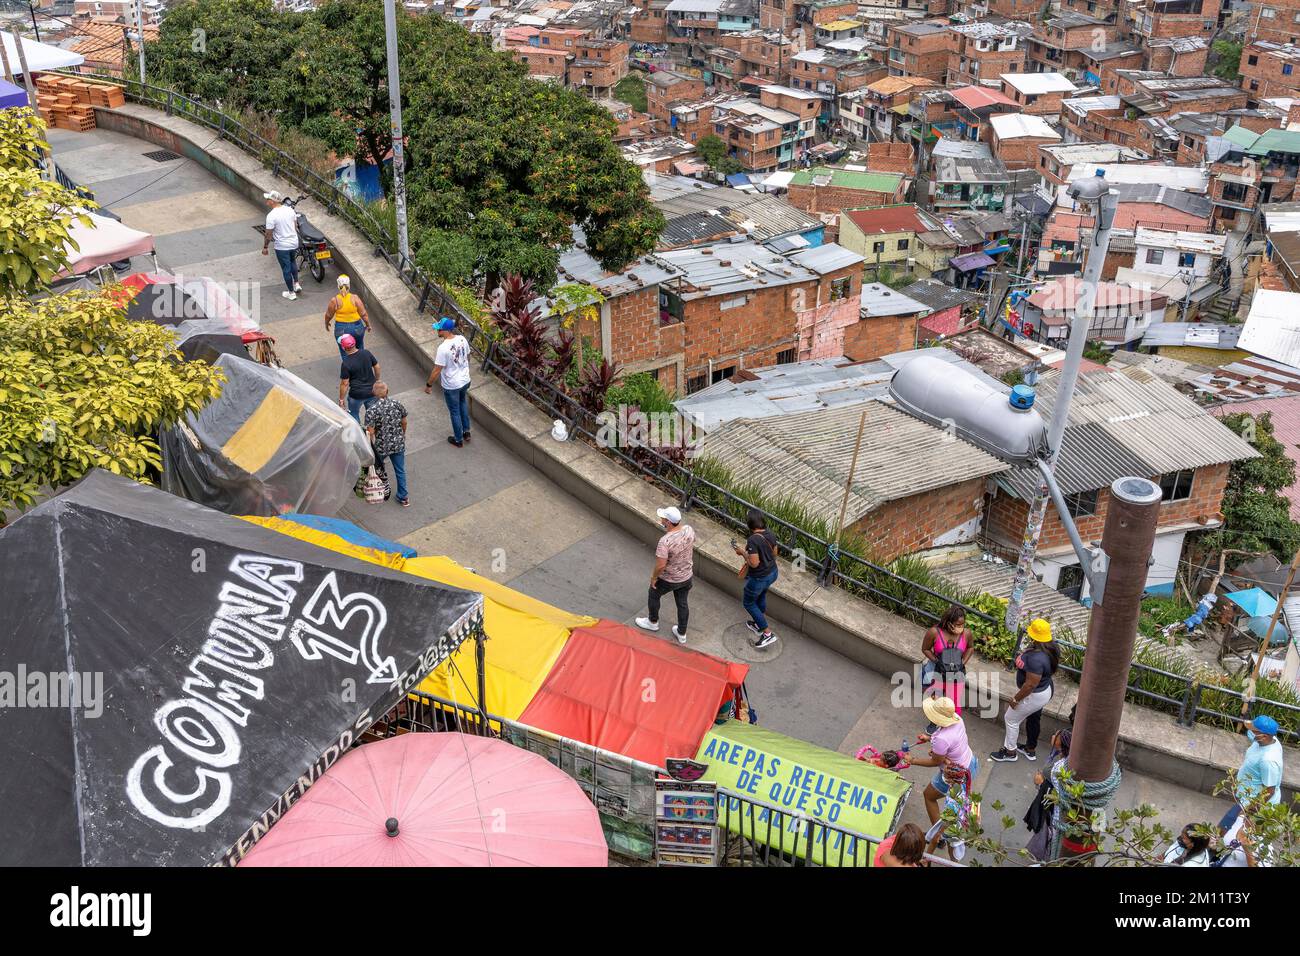 South America, Colombia, Departamento de Antioquia, Medellín, Comuna 13, Street scene in the tourist district Comuna 13 Stock Photo